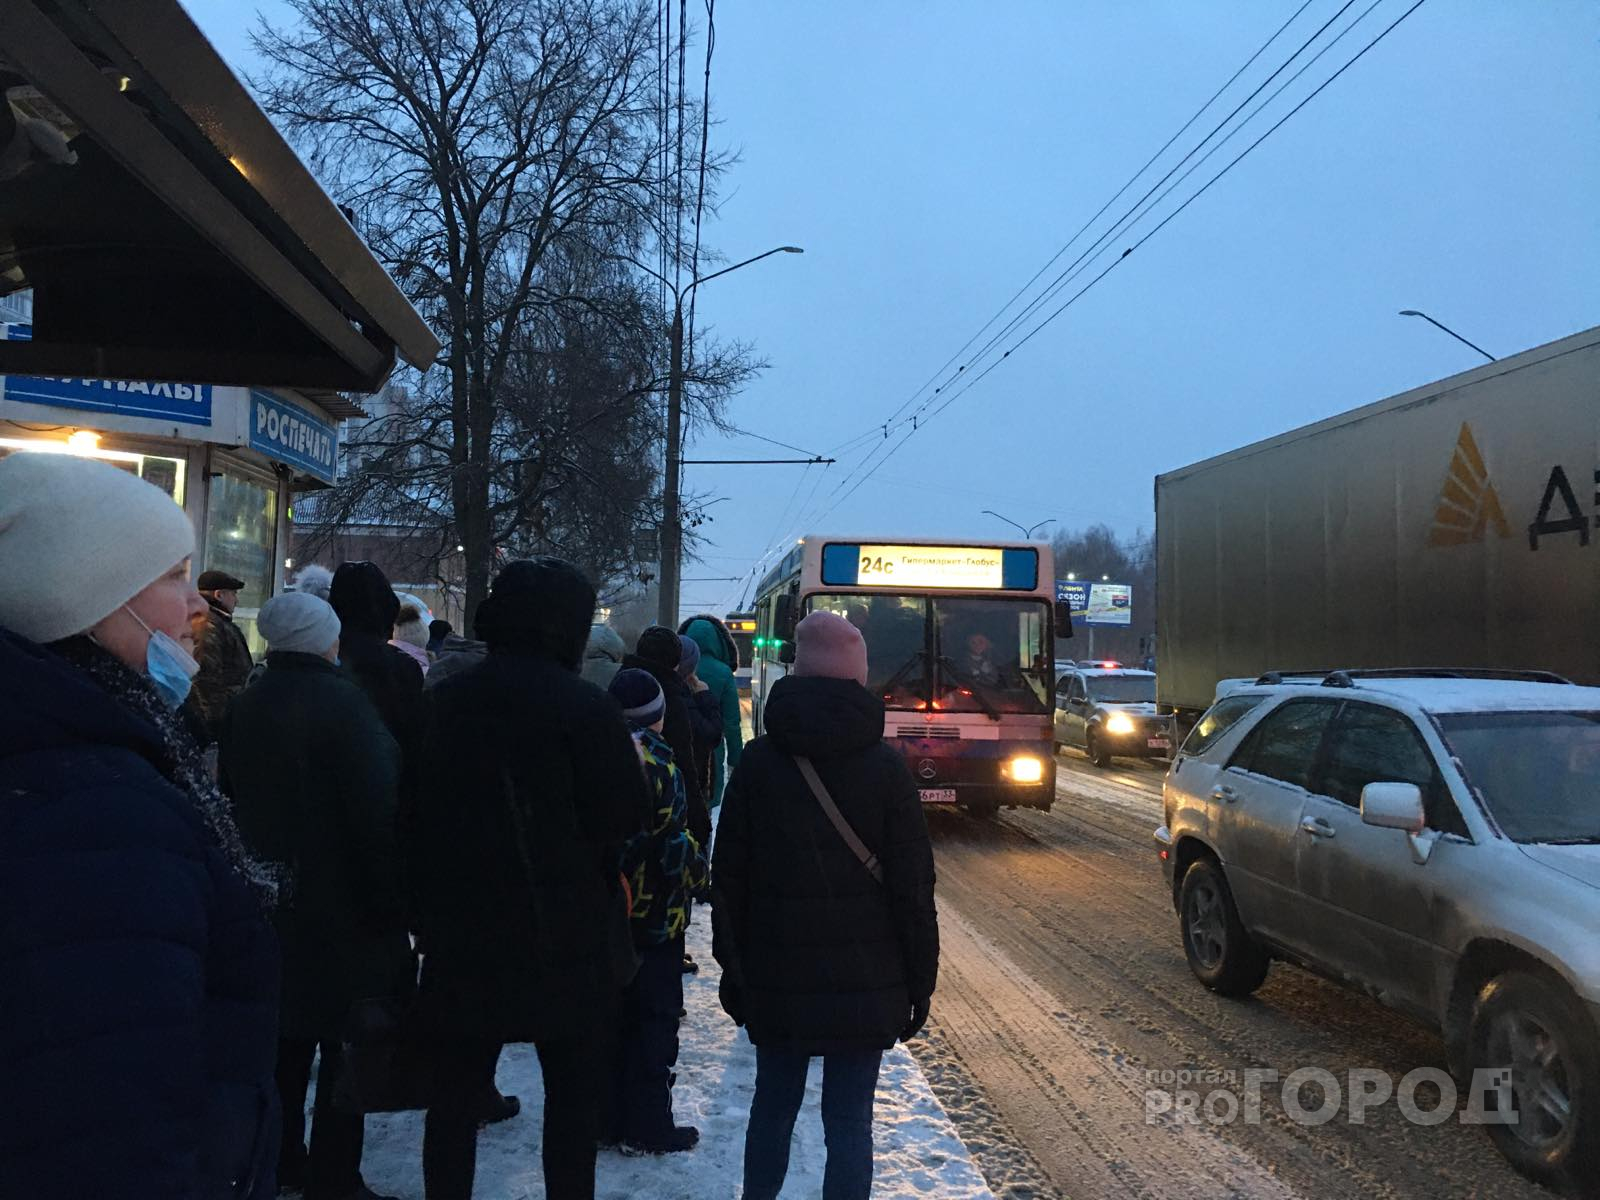 Мэрия Владимира объявила тендер на поставку 20 новых автобусов